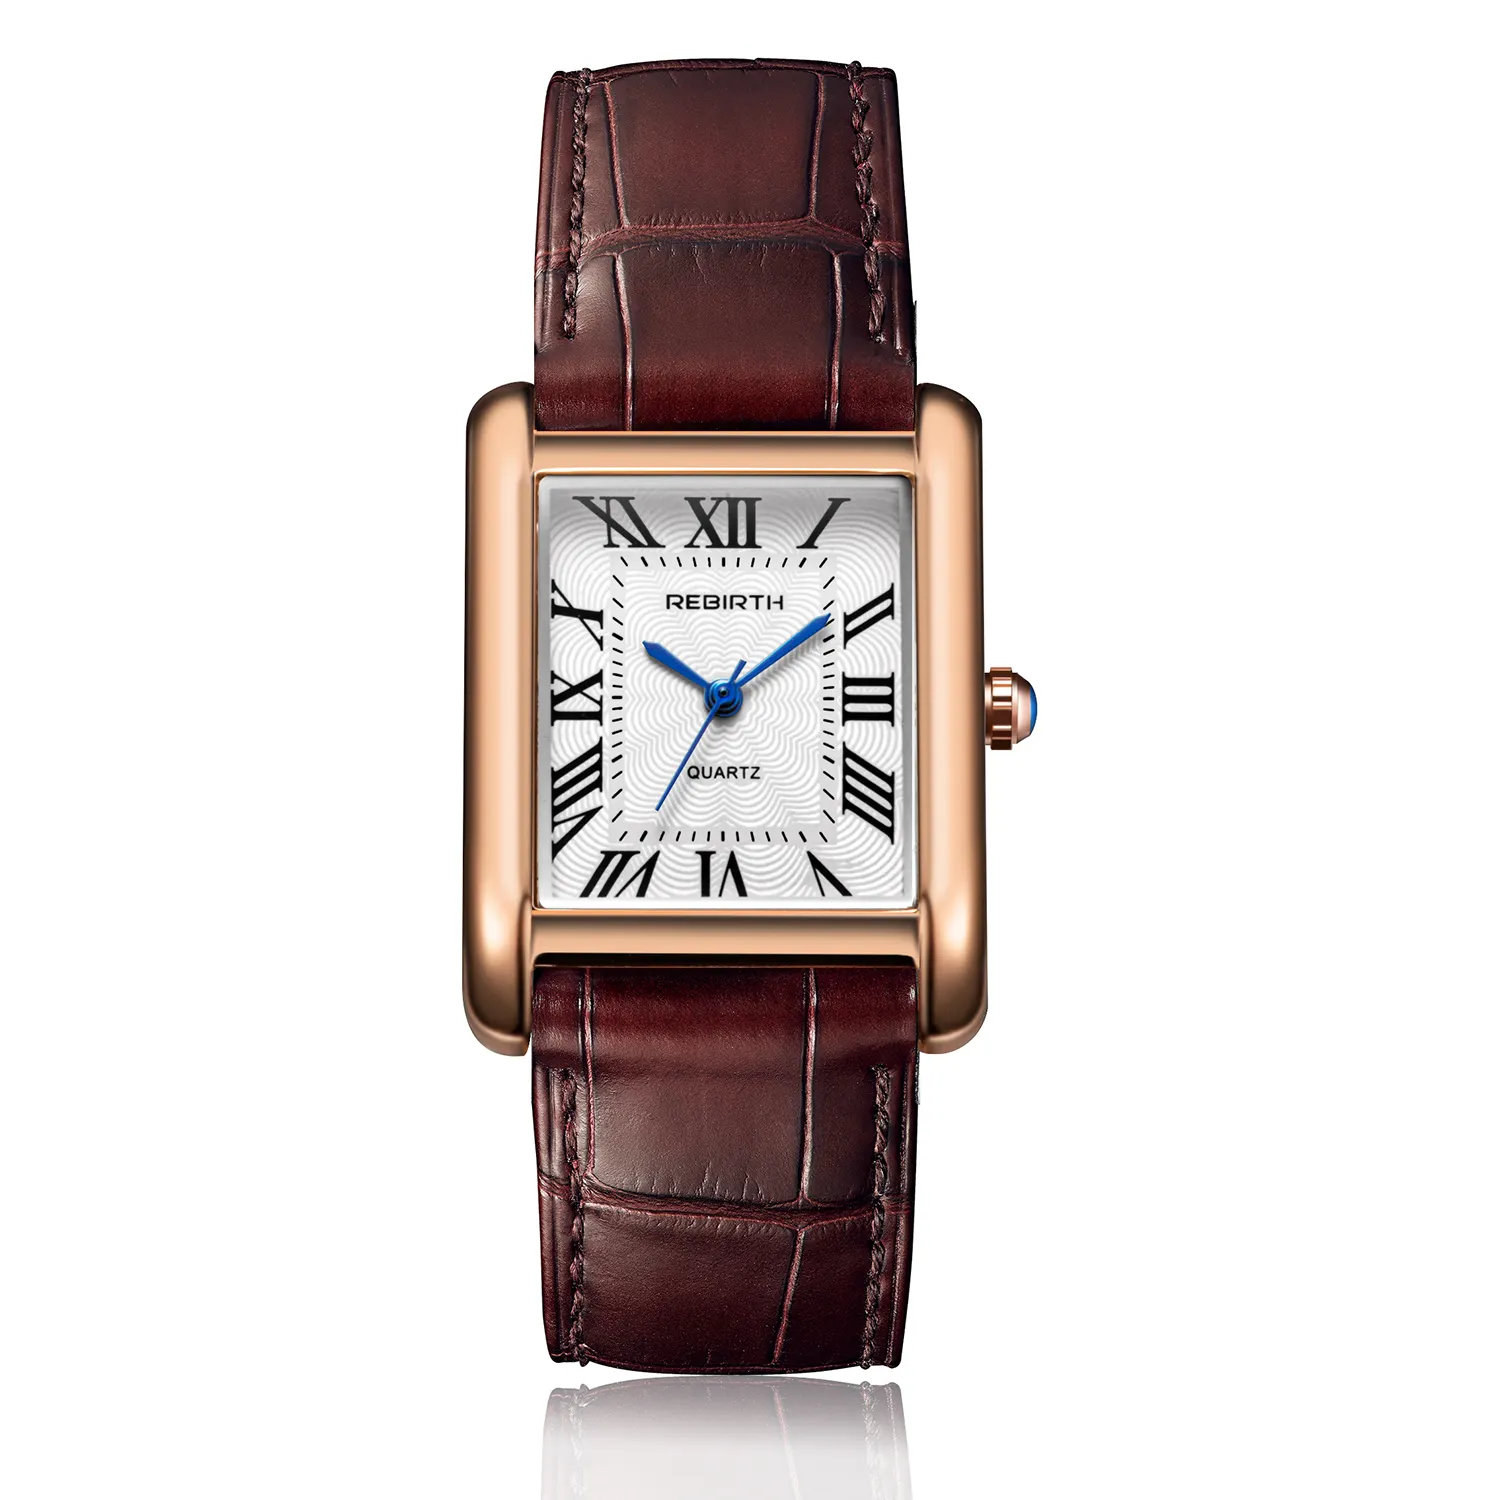 WJ-11058 לידה מחדש חדש מגמת פשוט יוקרה עסקי כיכר גברים עור קוורץ שעונים פופולרי שעונים